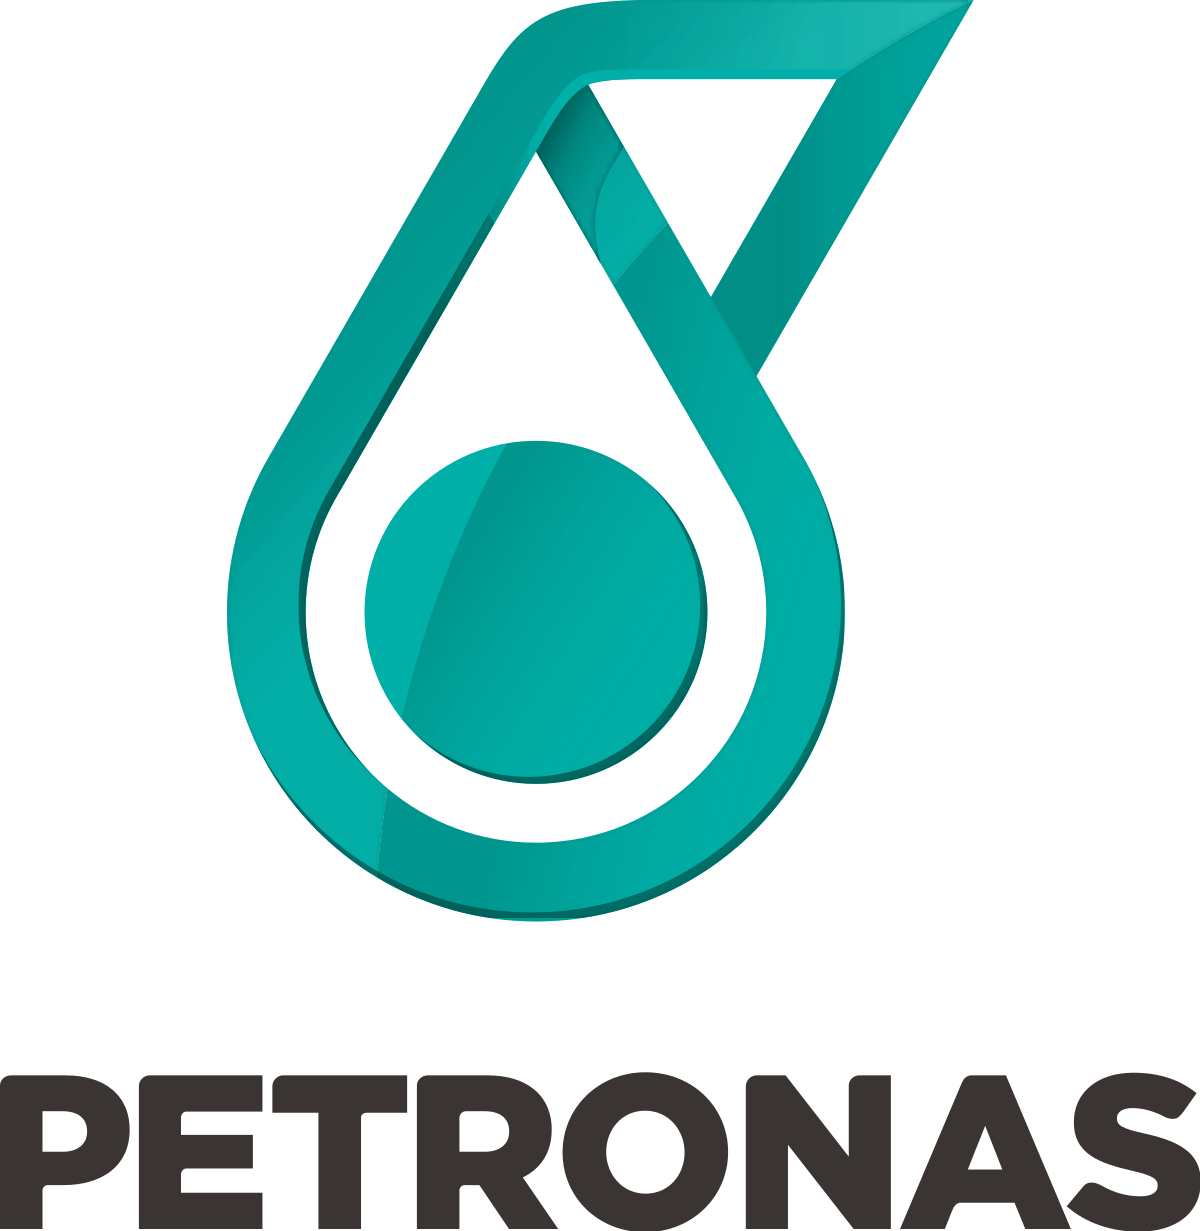 Canadian Oil Company Logo - Petronas